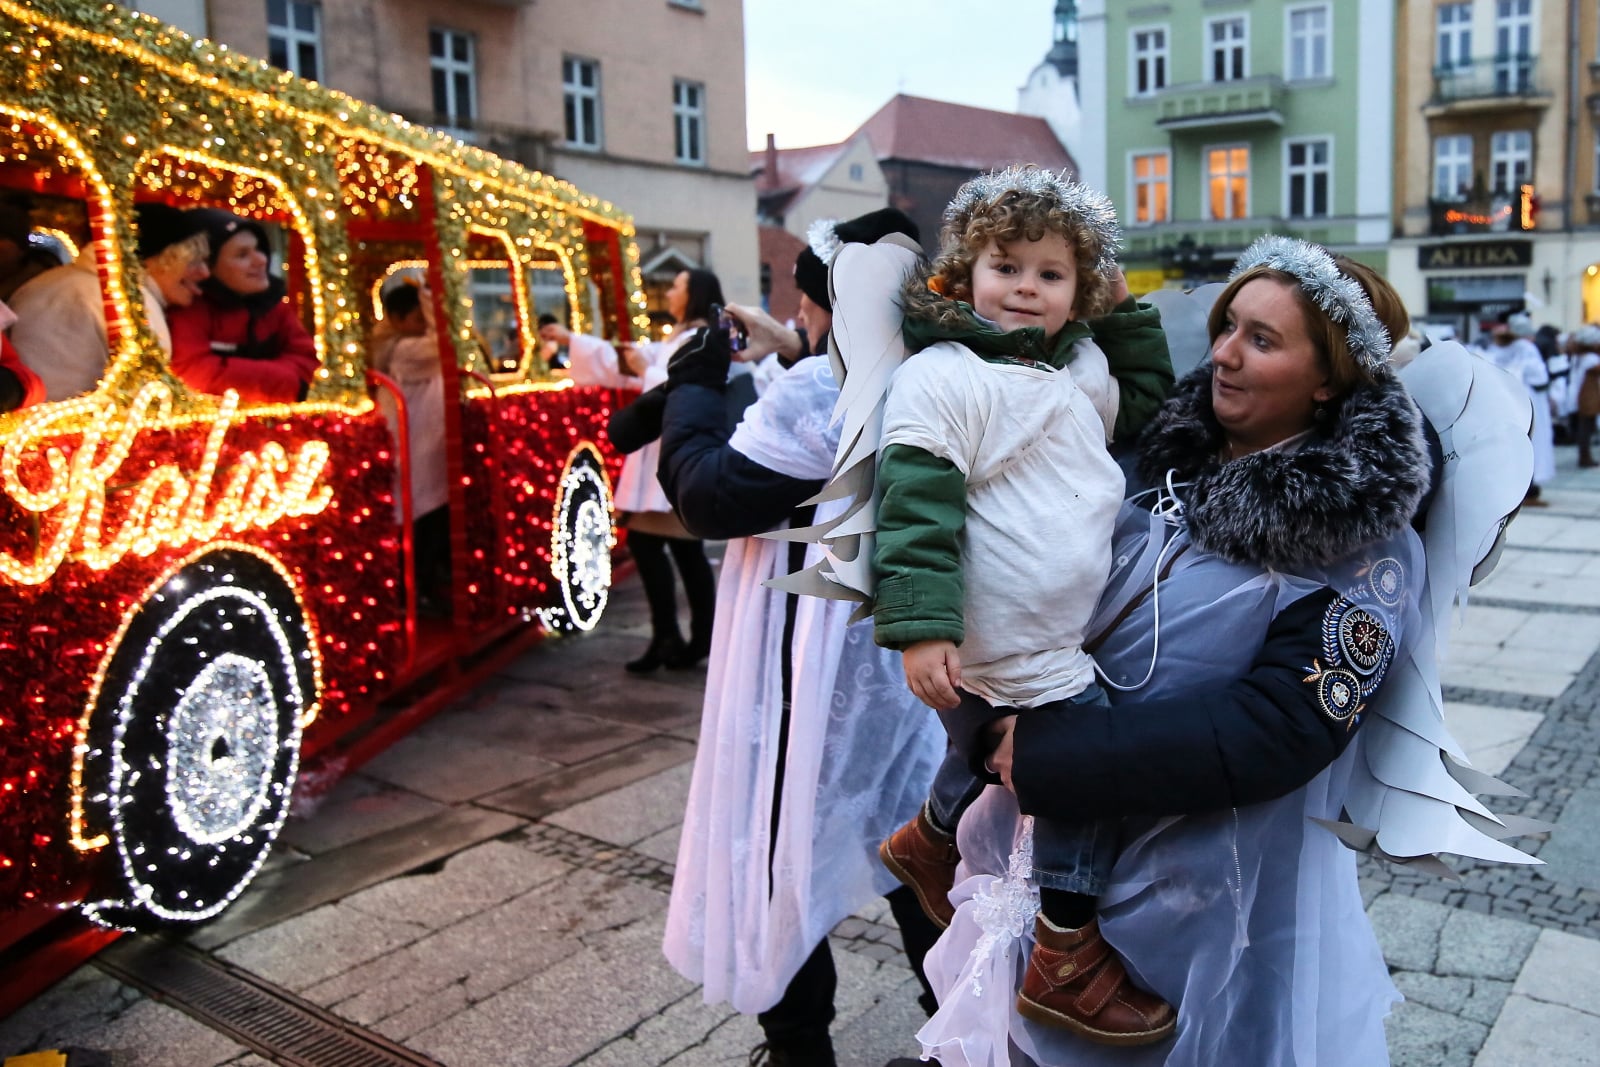 Mieszkańcy Kalisza w anielskich strojach zgromadzili siê na Rynku, próbując pobić rekord Guinnessa Polski w ilości aniołów zgromadzonych w jednym miejscu. PAP/Tomasz Wojtasik